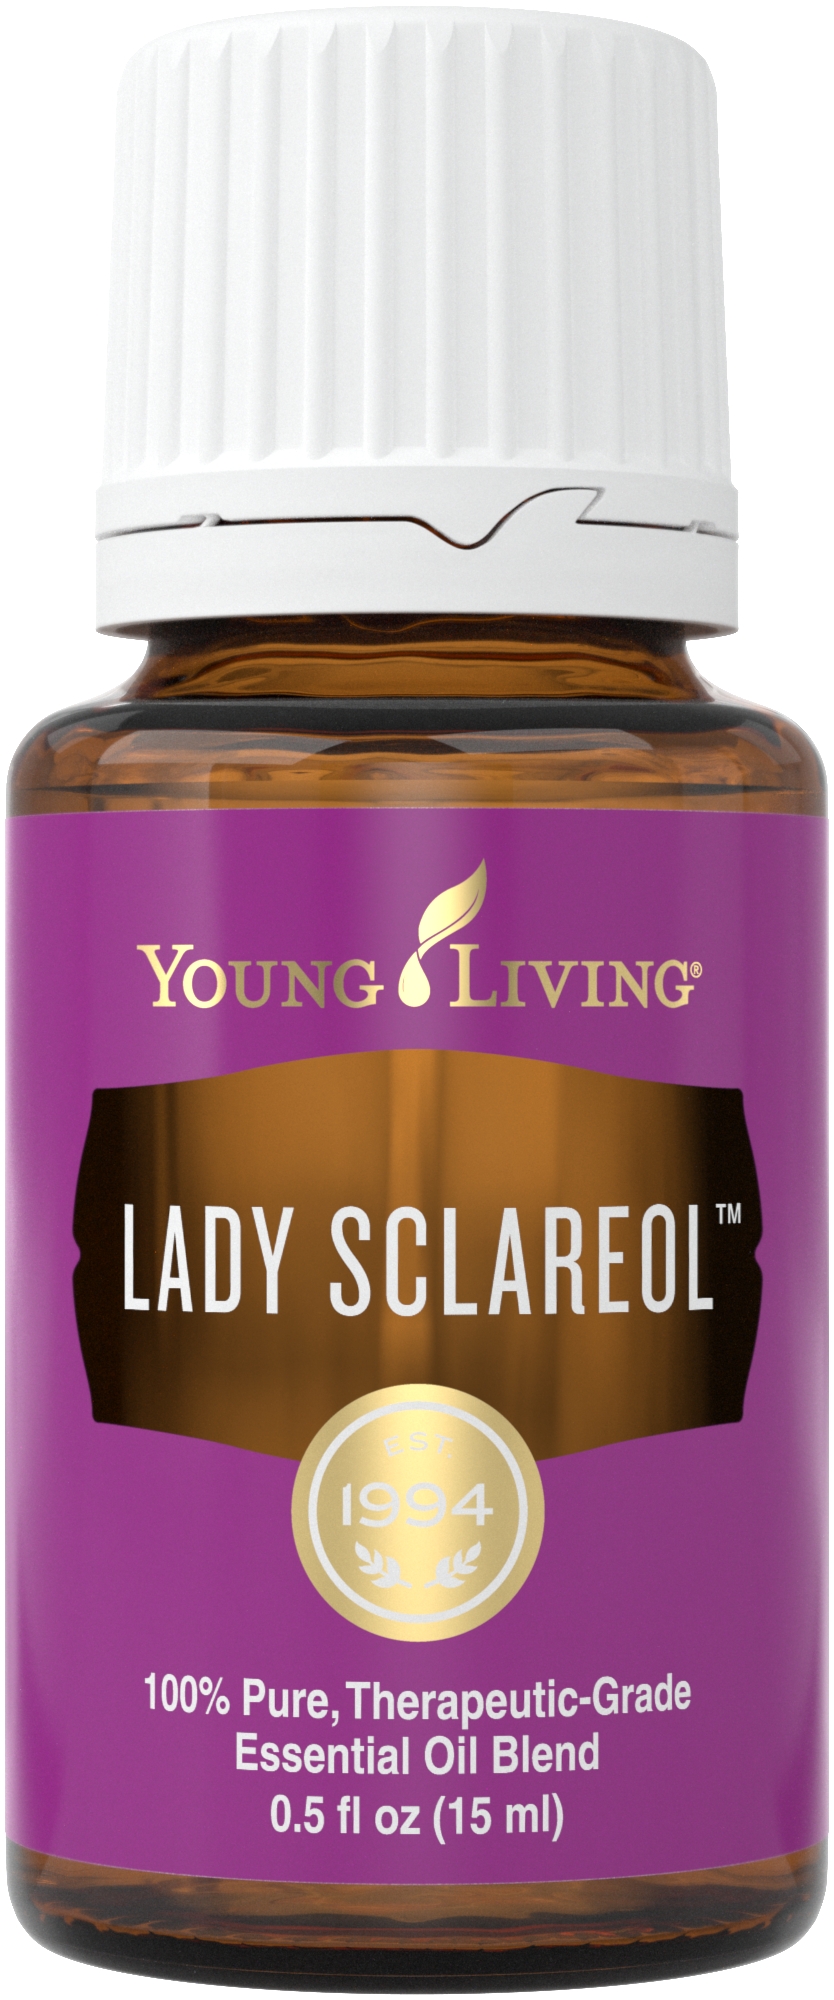 Mezcla de aceites esenciales Lady Sclareol | Vida joven